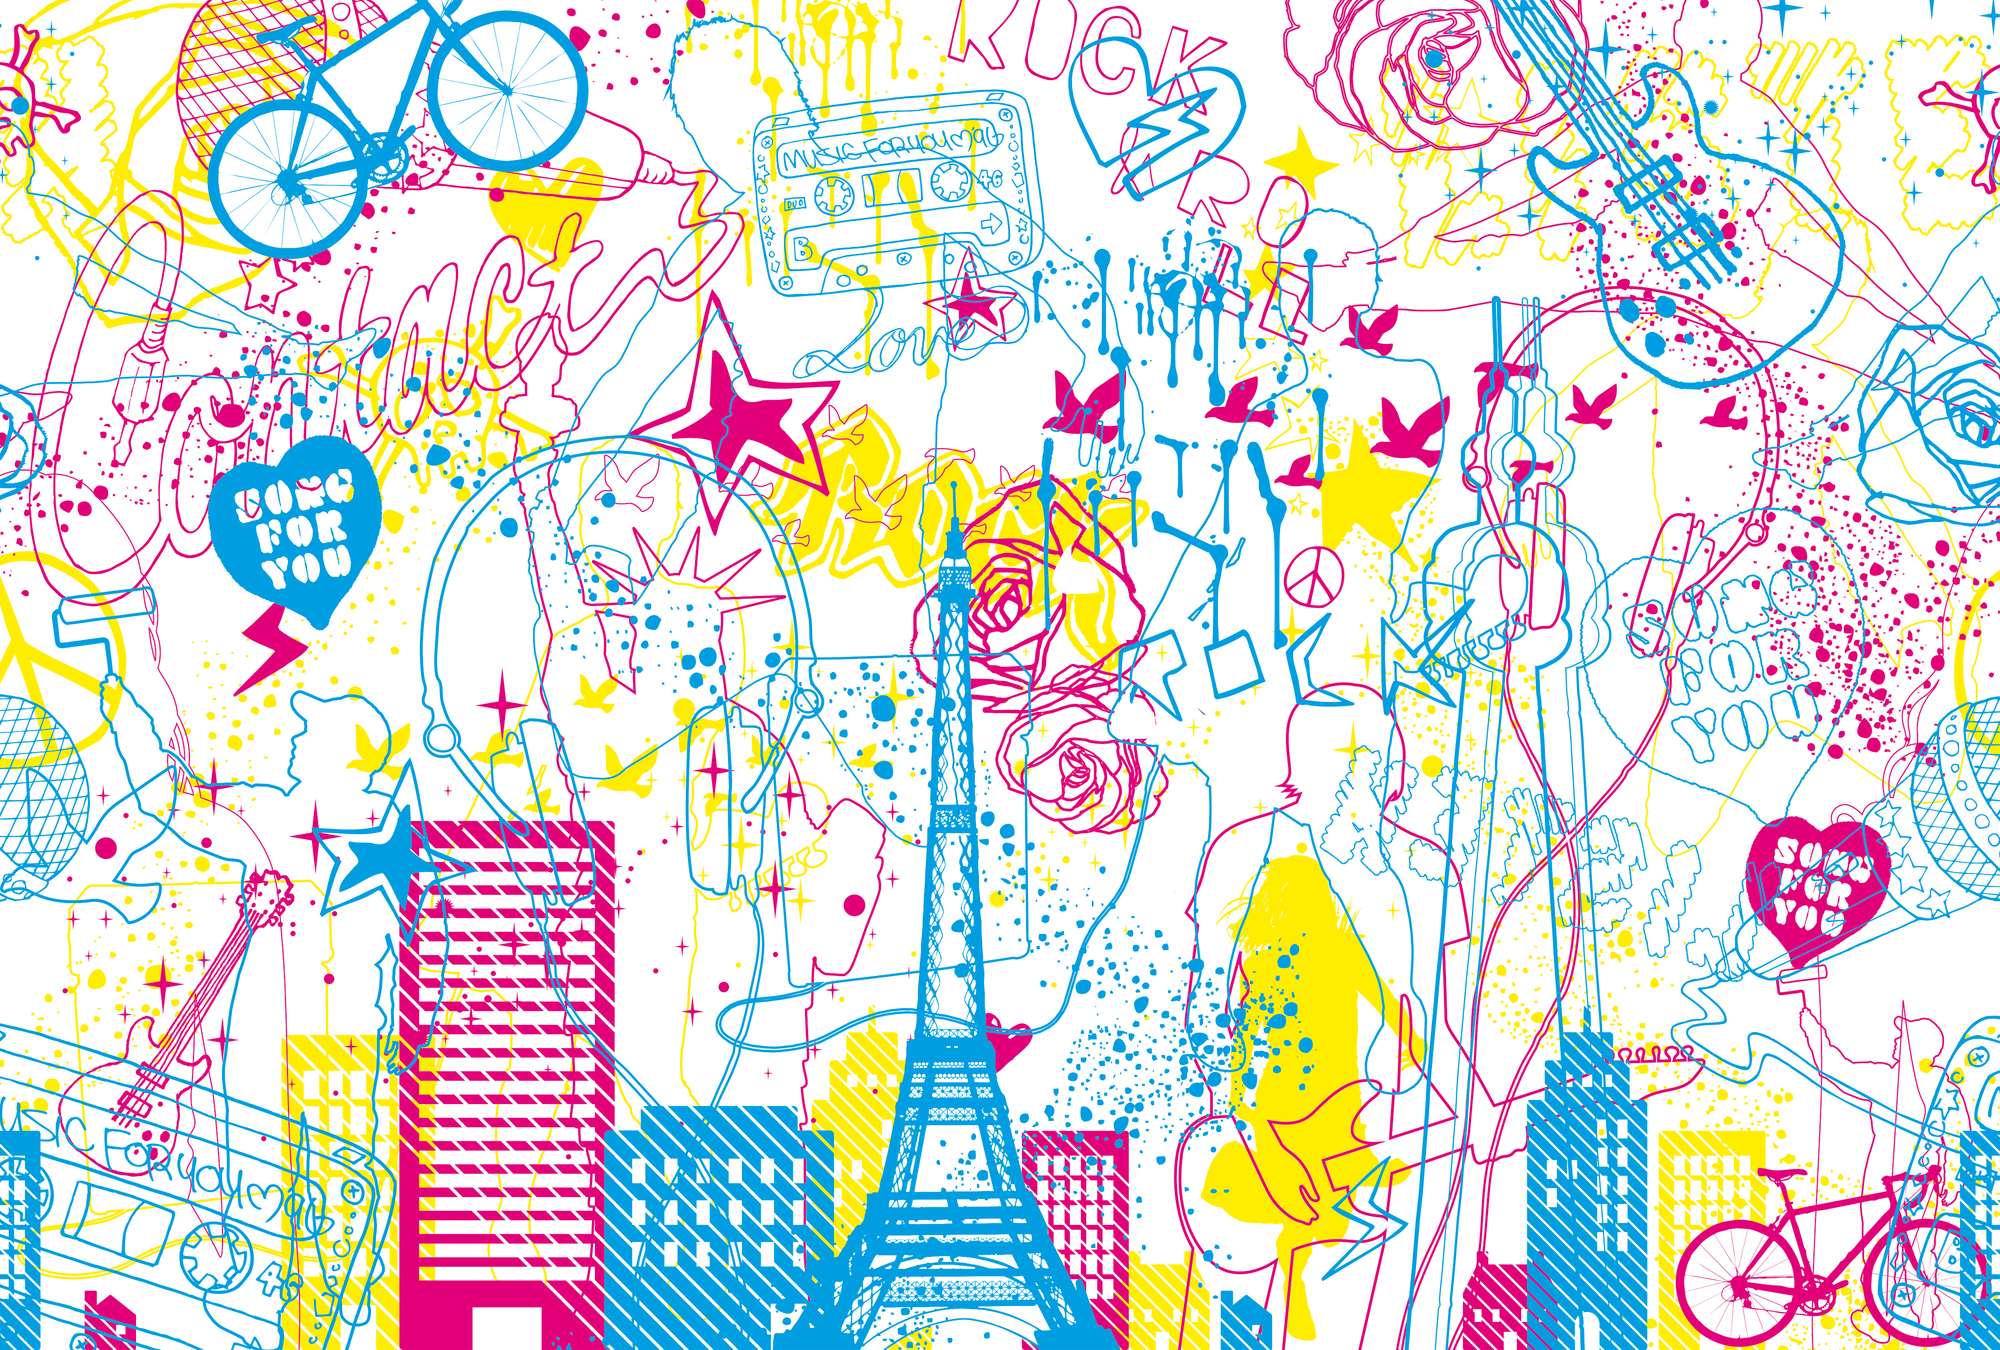             Music & City - mural children design doodle look
        